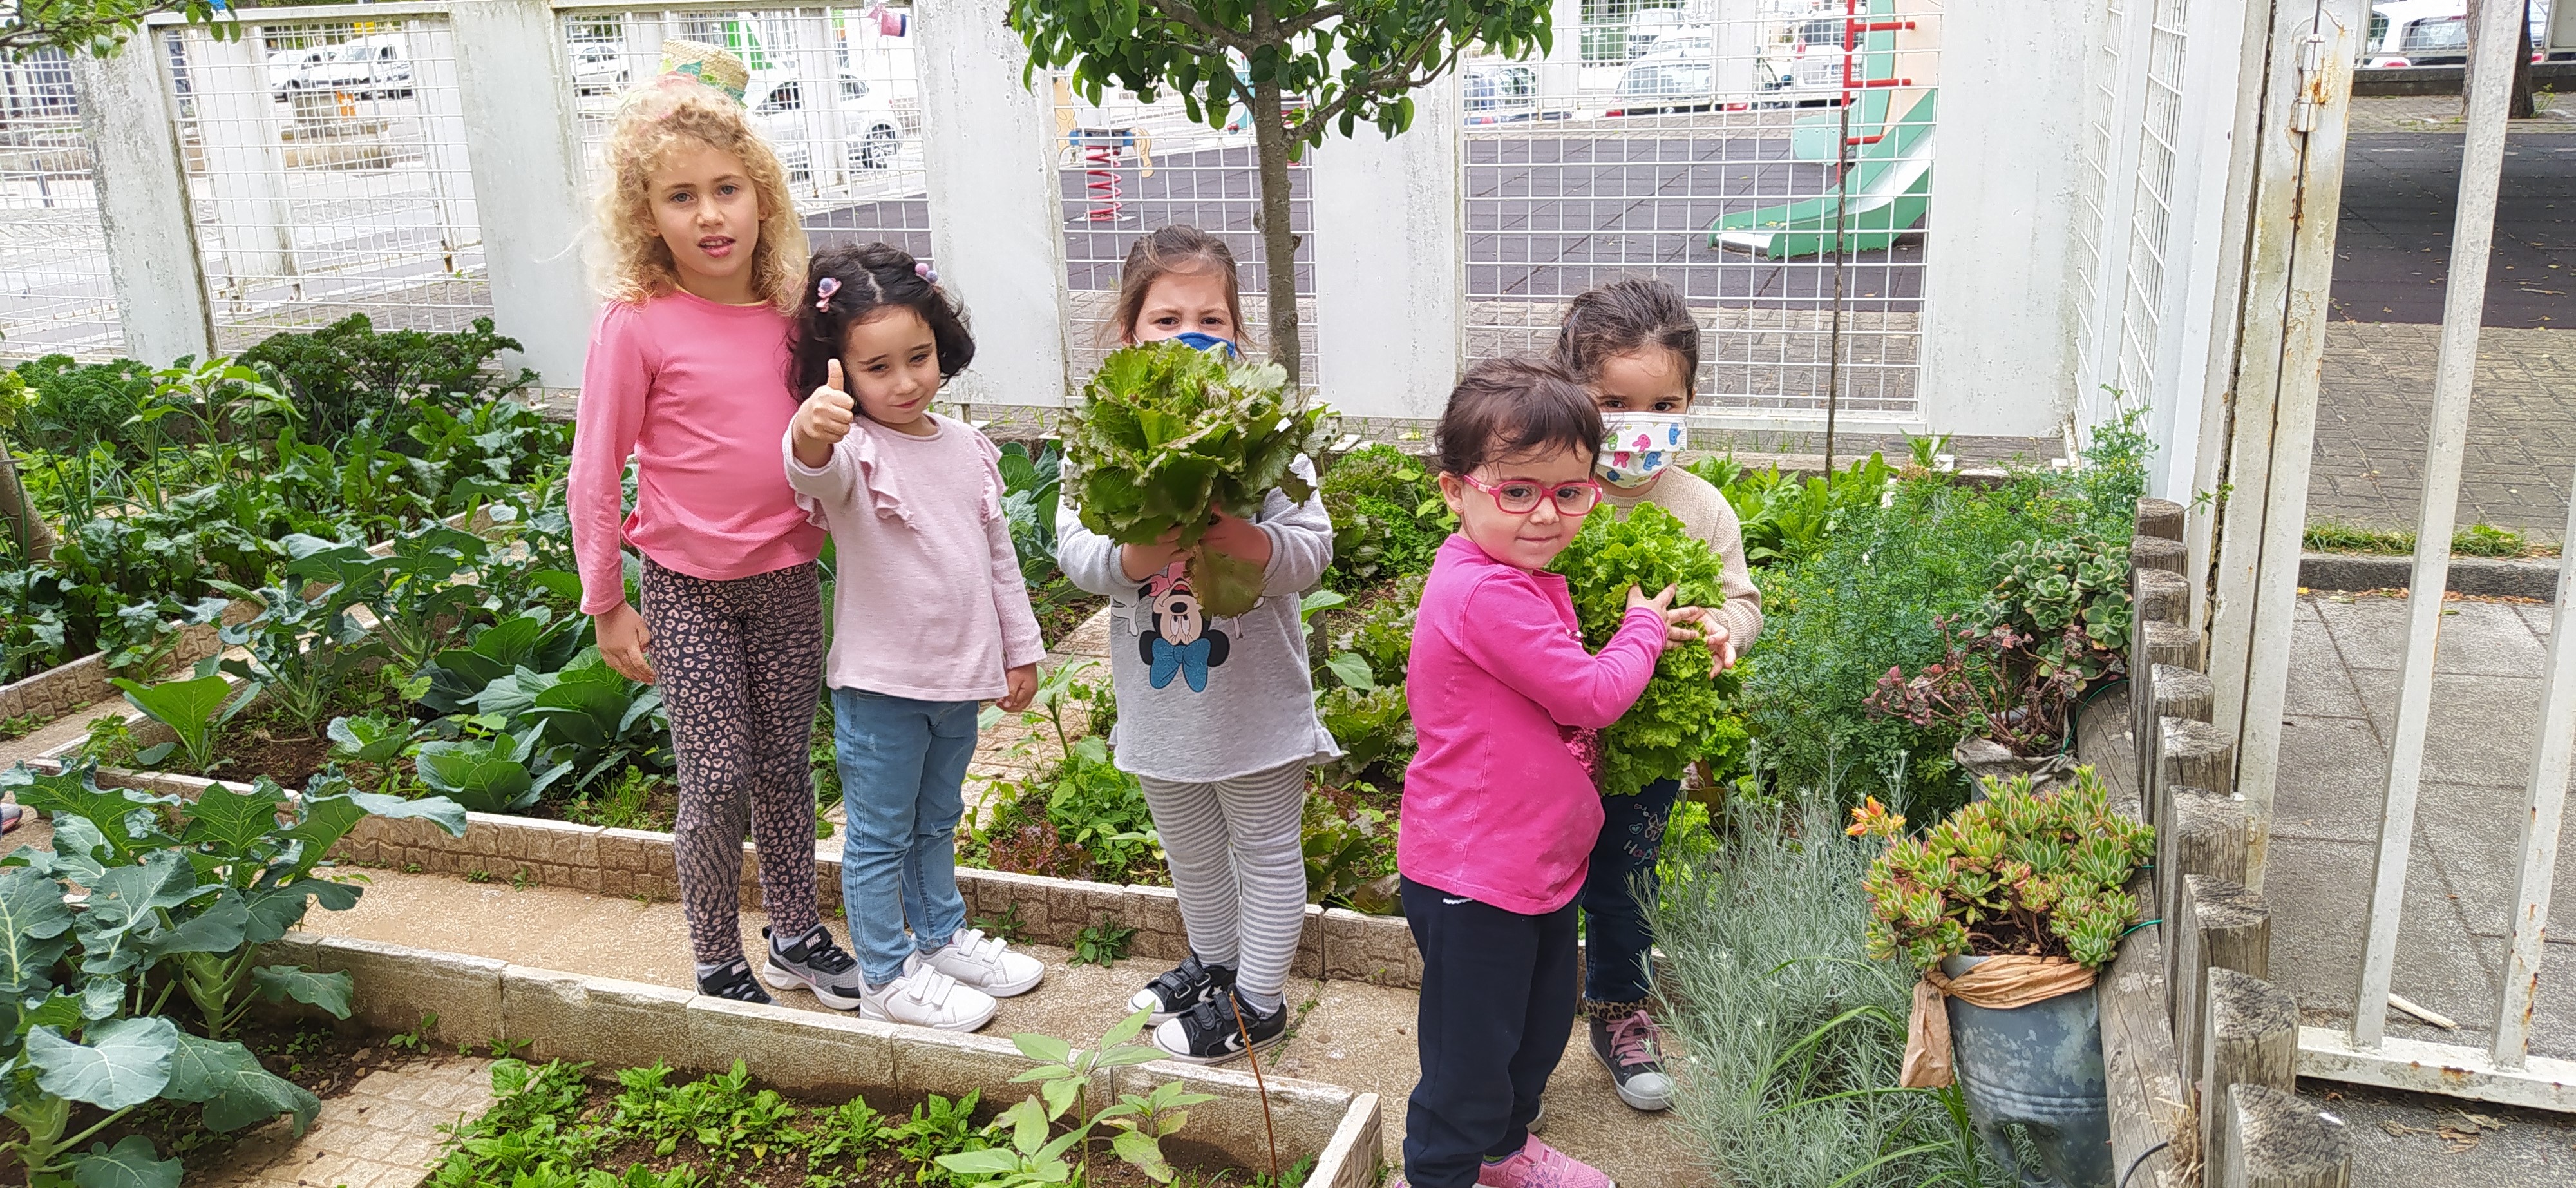 A Horta Pedagógica é um centro de interesse das crianças. Elas gostam de observar as plantas a crescer e identificar as suas diferenças. O que cada planta nos dá e como se come. Continua-se a tratar bem delas e a retirar as plantas invasoras.